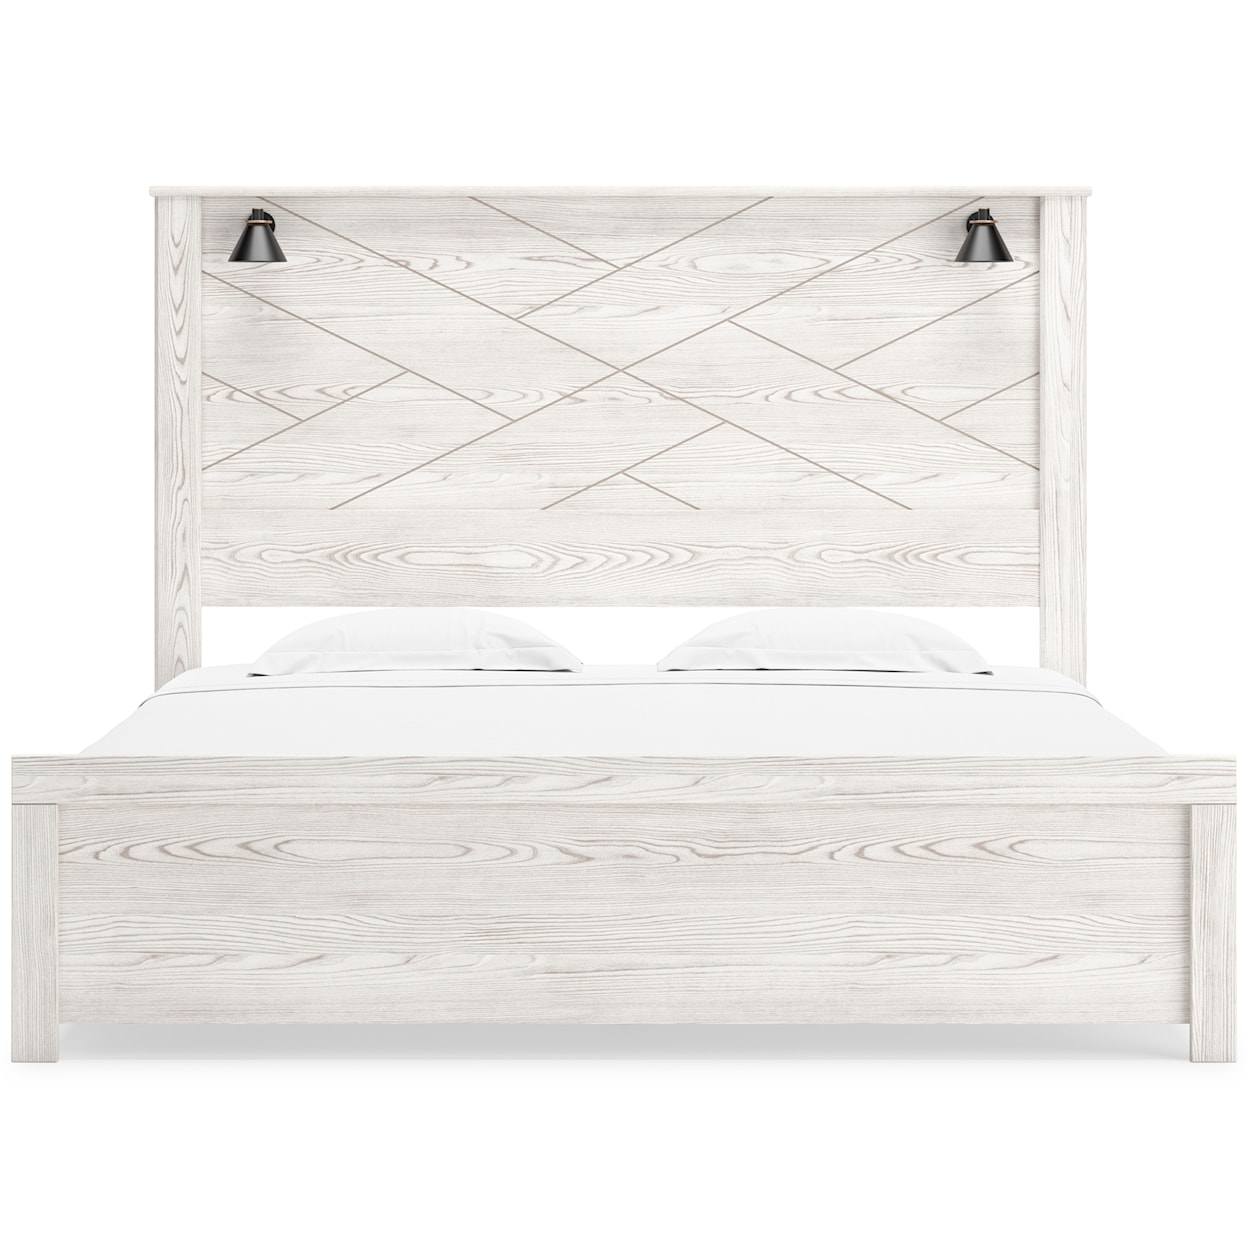 Signature Design Gerridan King Panel Bed